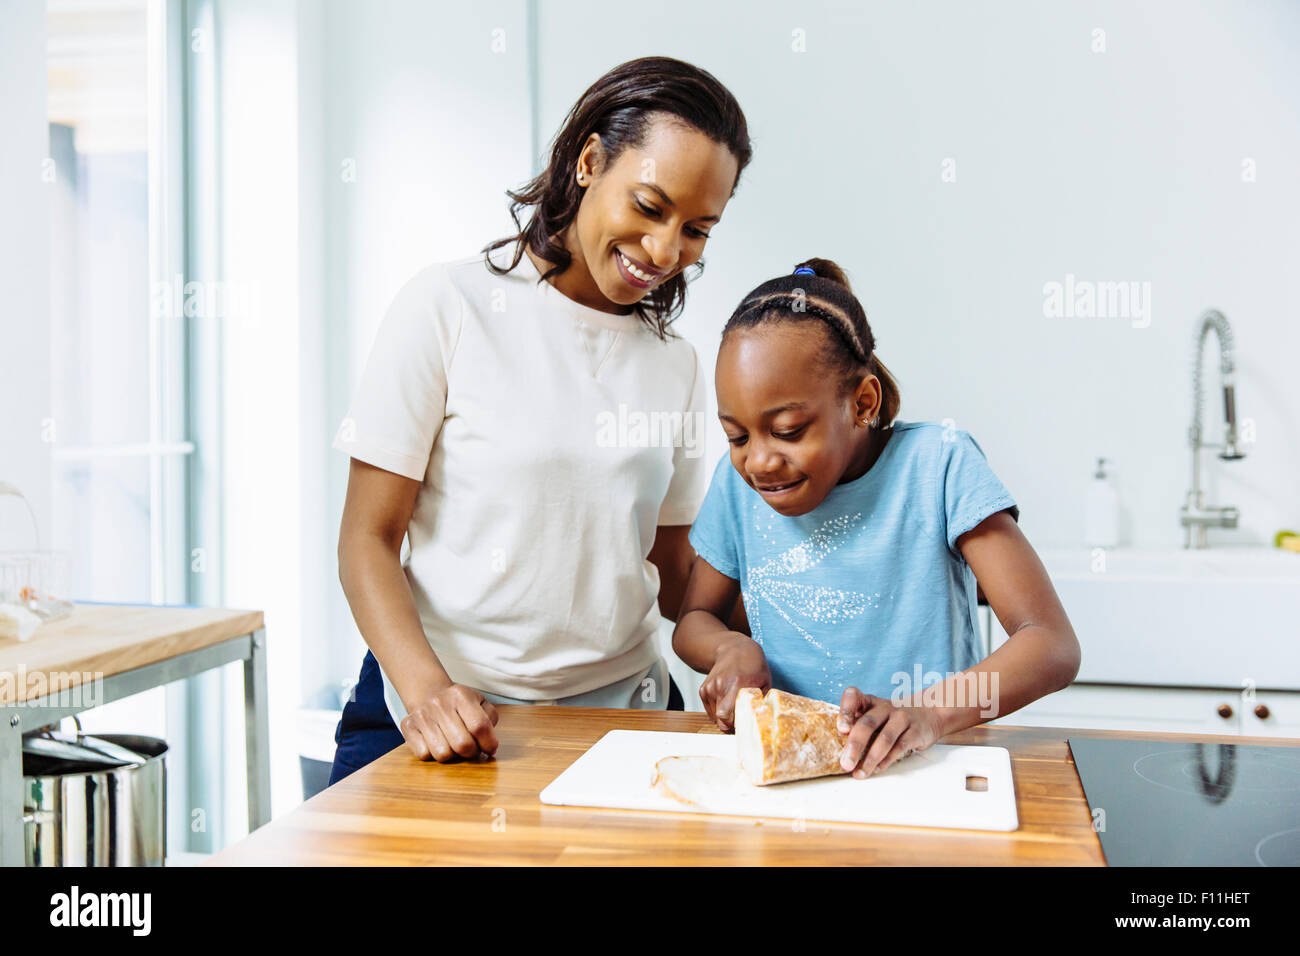 La mère et la fille noire du pain en tranches dans la cuisine Banque D'Images